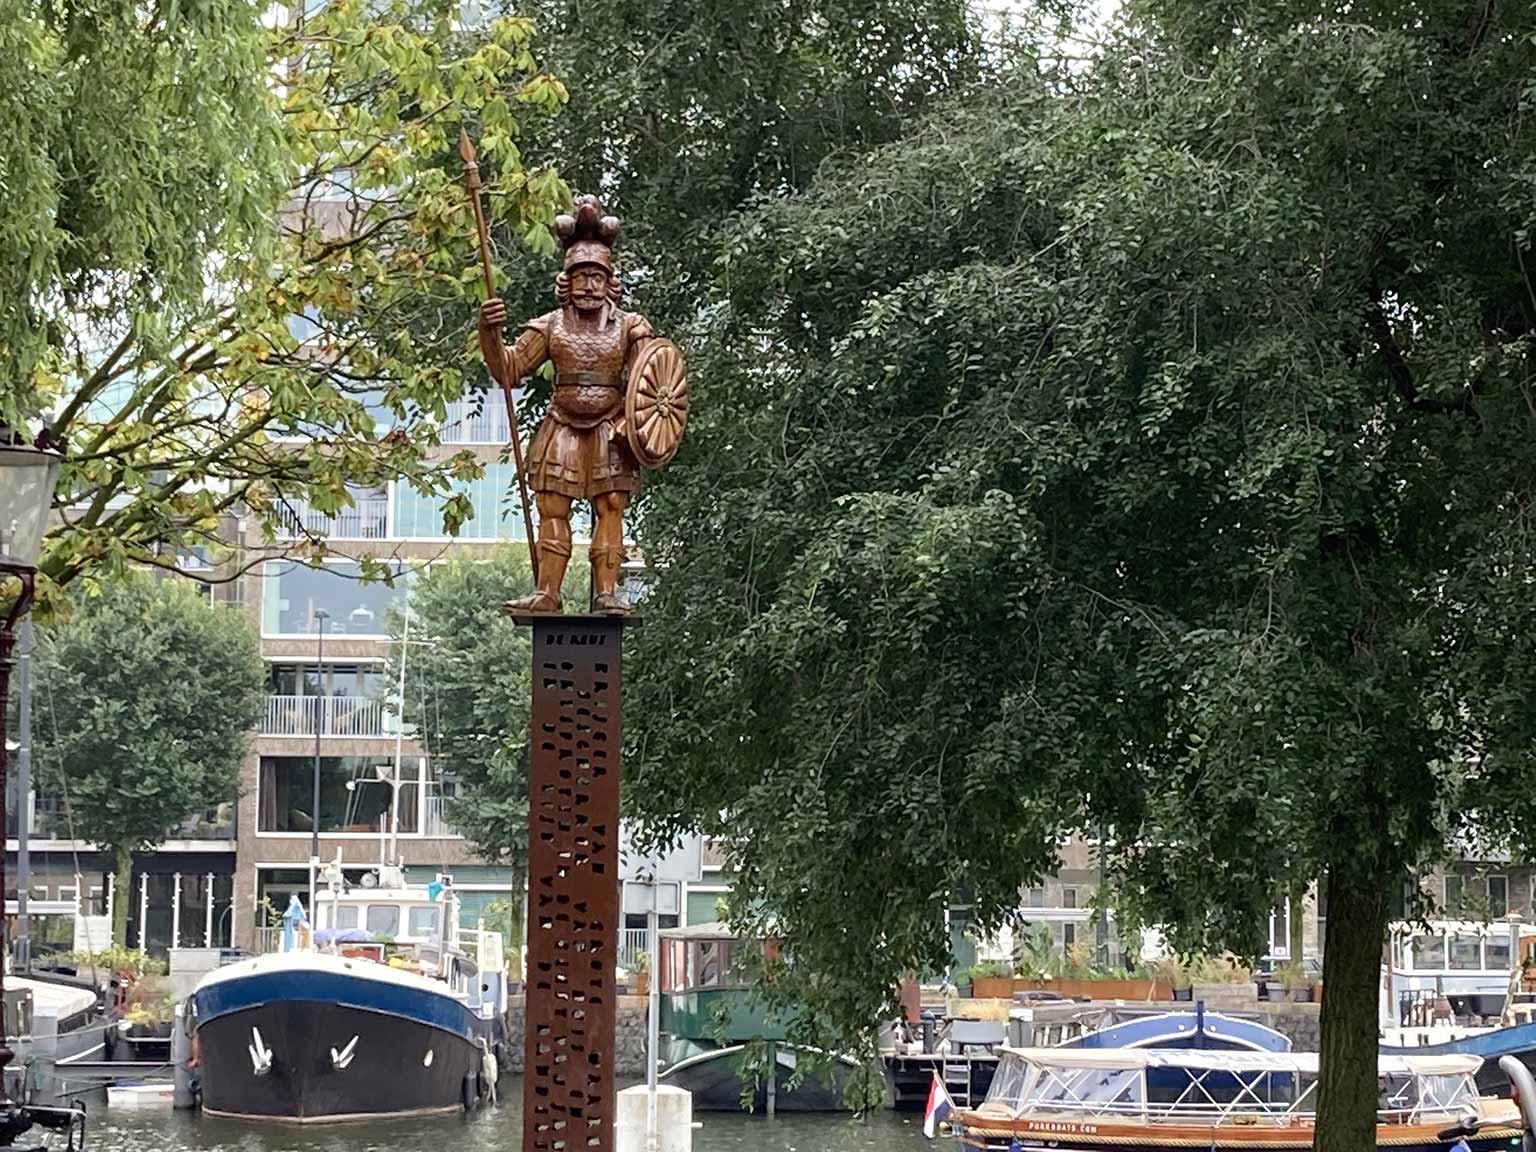 De Reus van Bickerseiland at Hollandse Tuin, Amsterdam